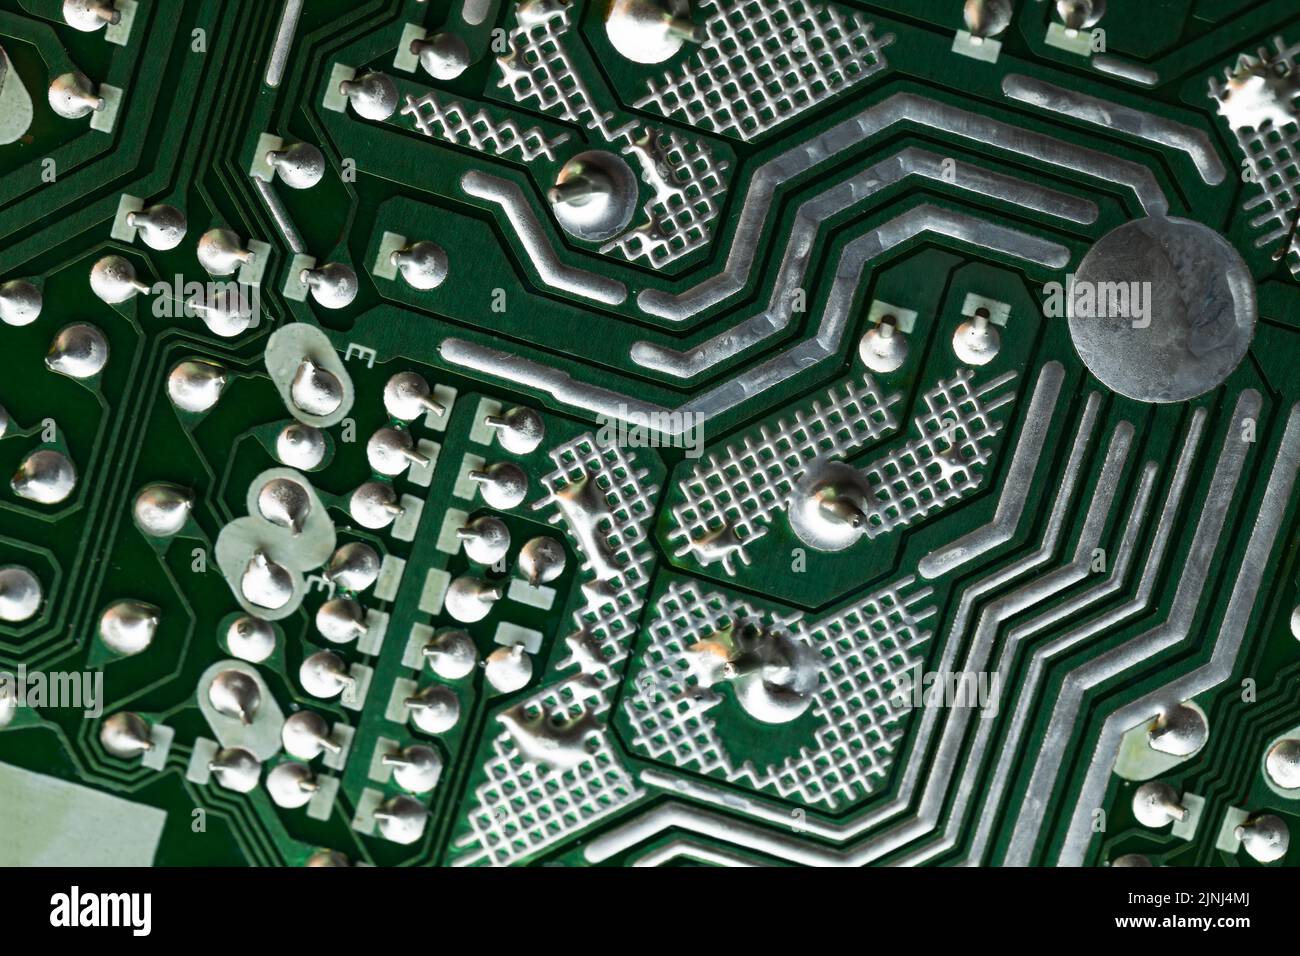 Sfondo high-tech astratto con scheda a circuito stampato verde, componente microelettronico Foto Stock